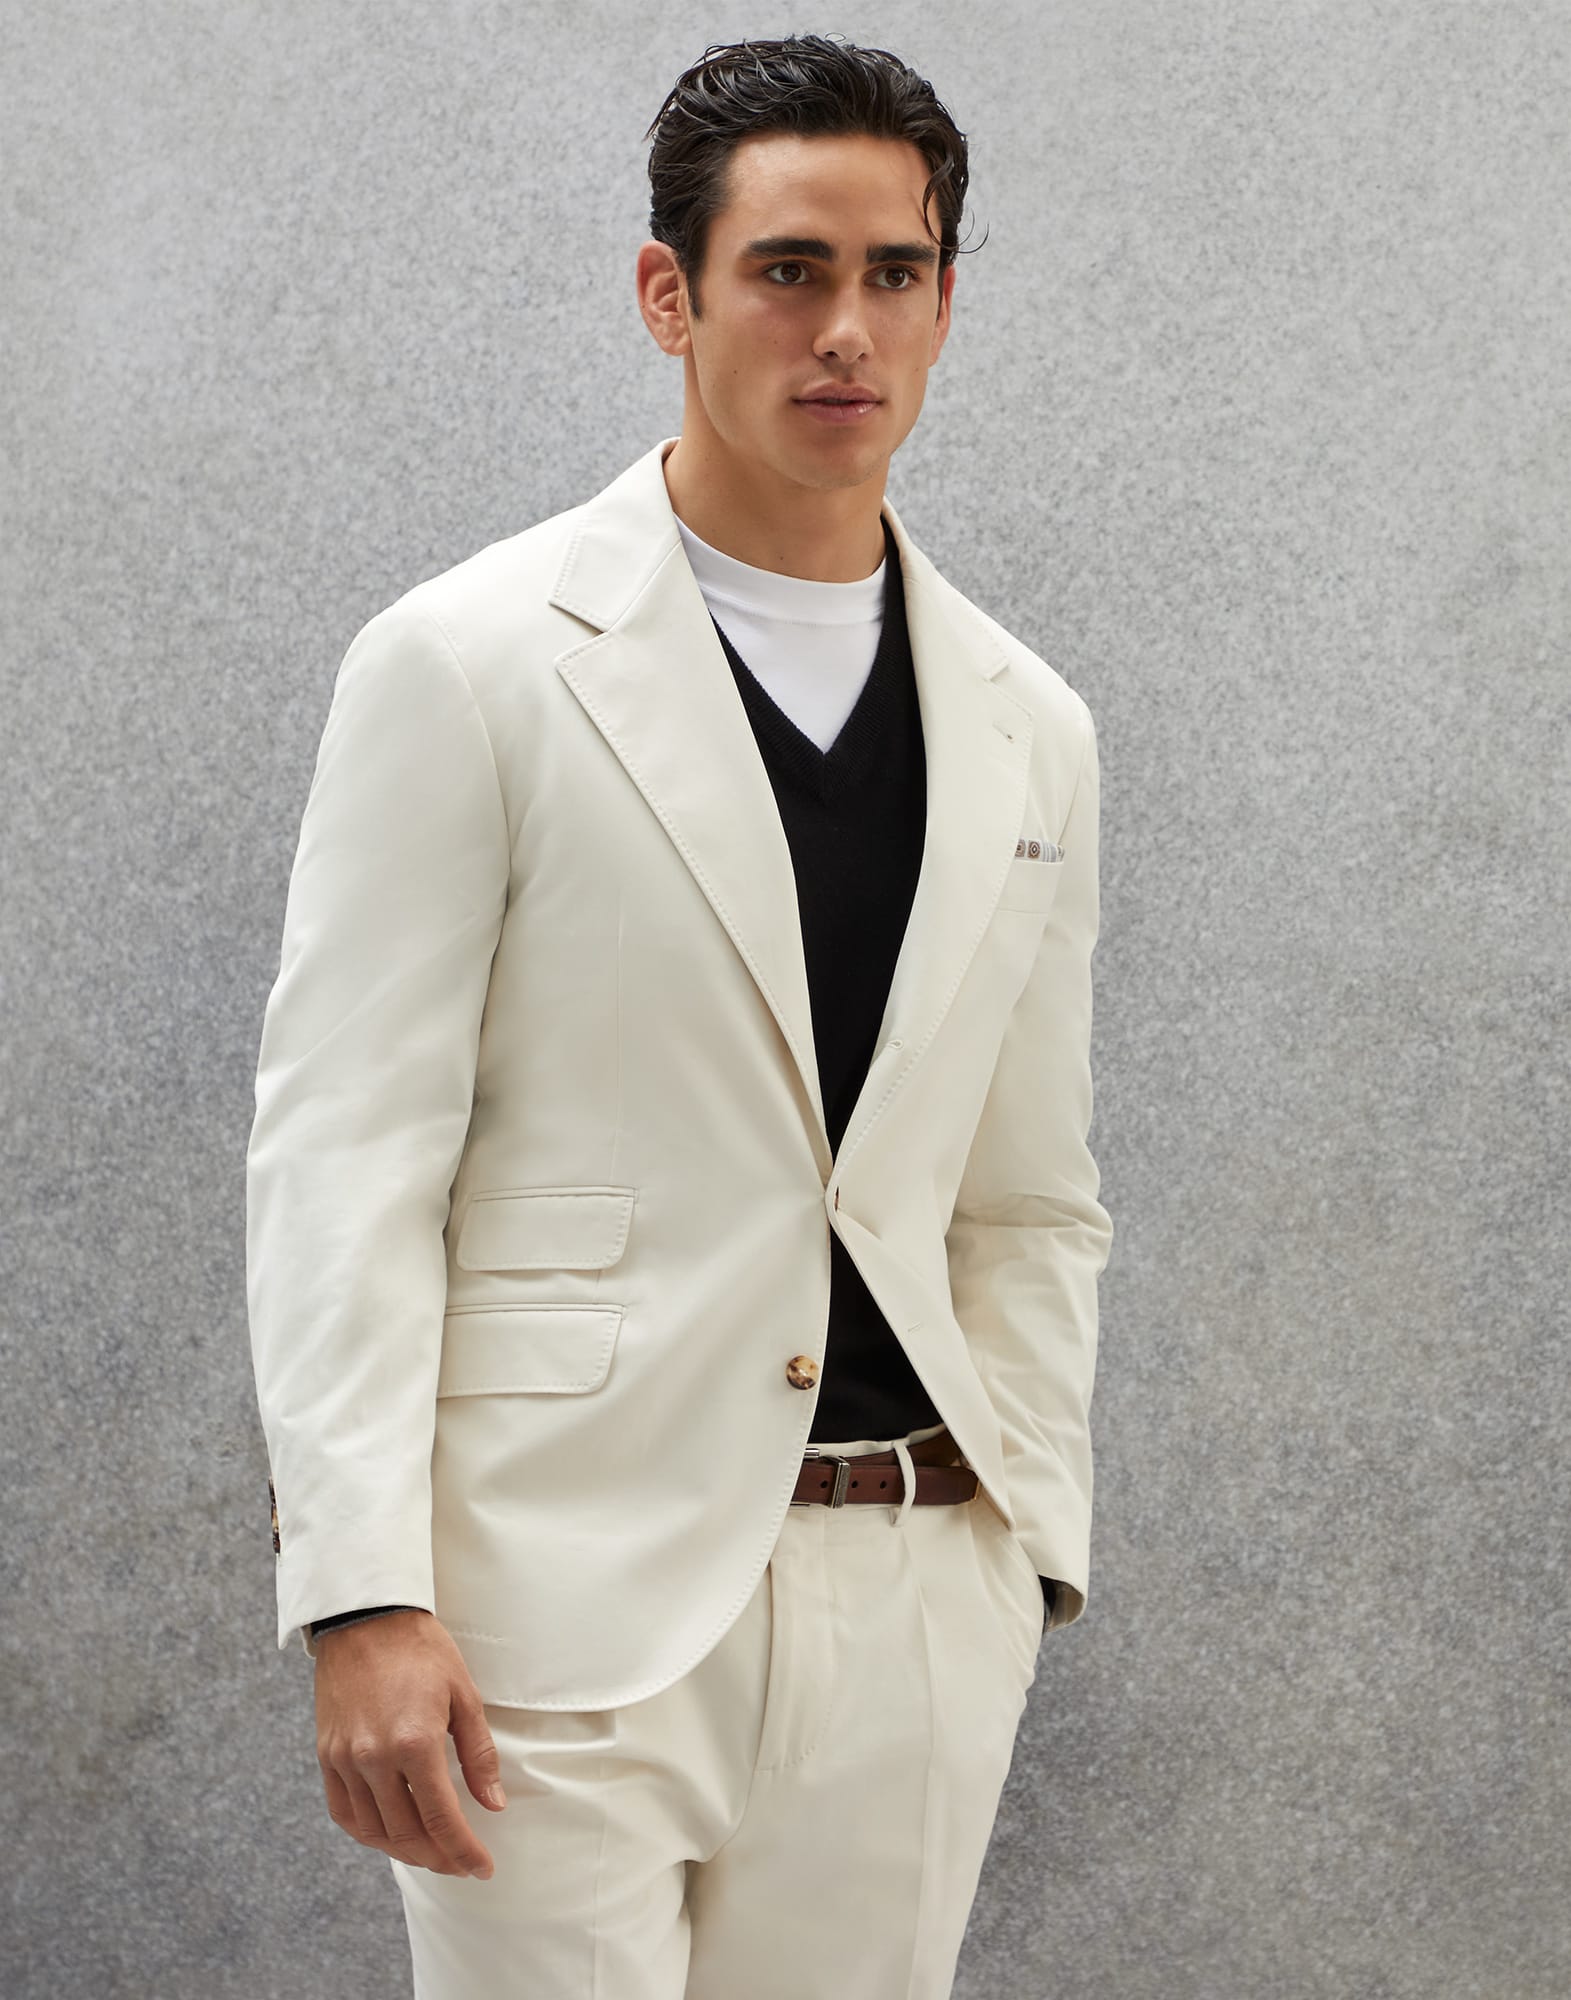 Бесподкладочный пиджак Cavallo Белый с Сероватым Оттенком Мужчина - Brunello Cucinelli